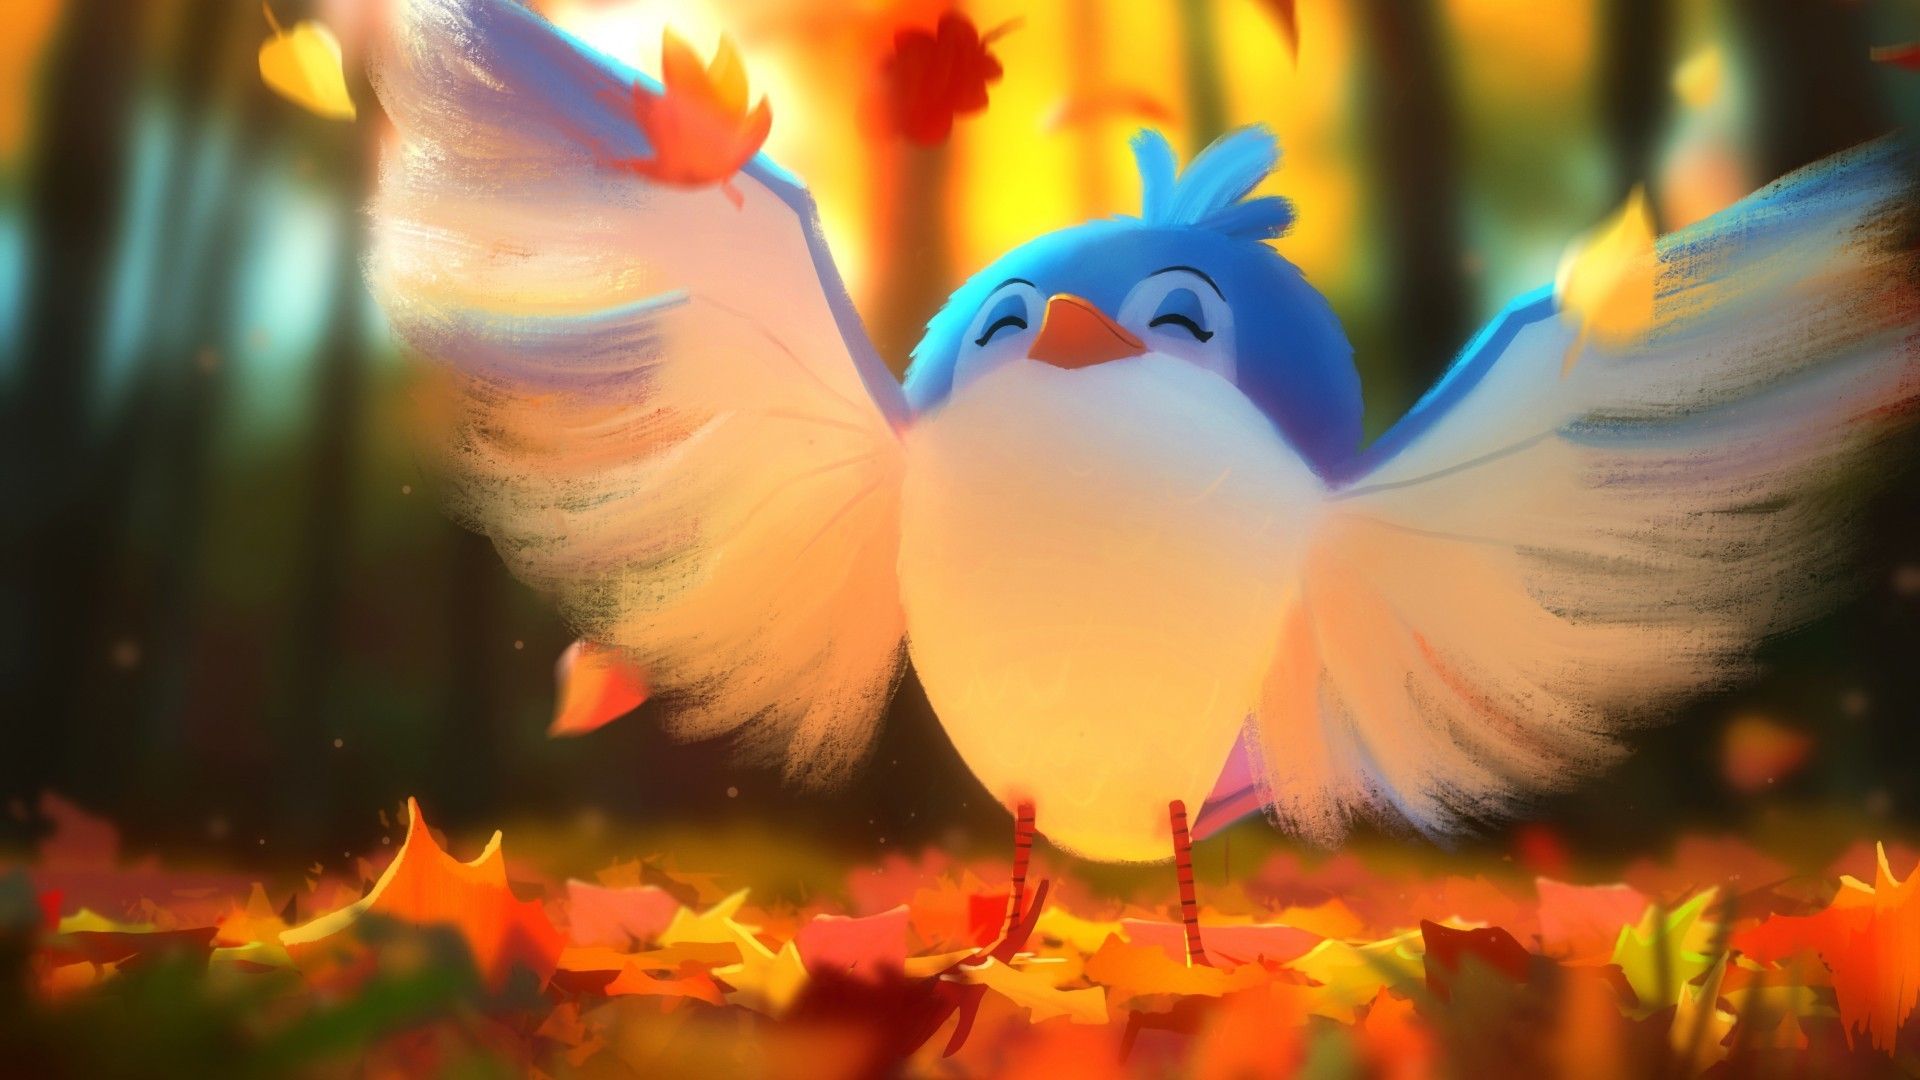 Download 1920x1080 Cute Bird, Digital Artwork, Wings, Autumn Wallpaper for Widescreen